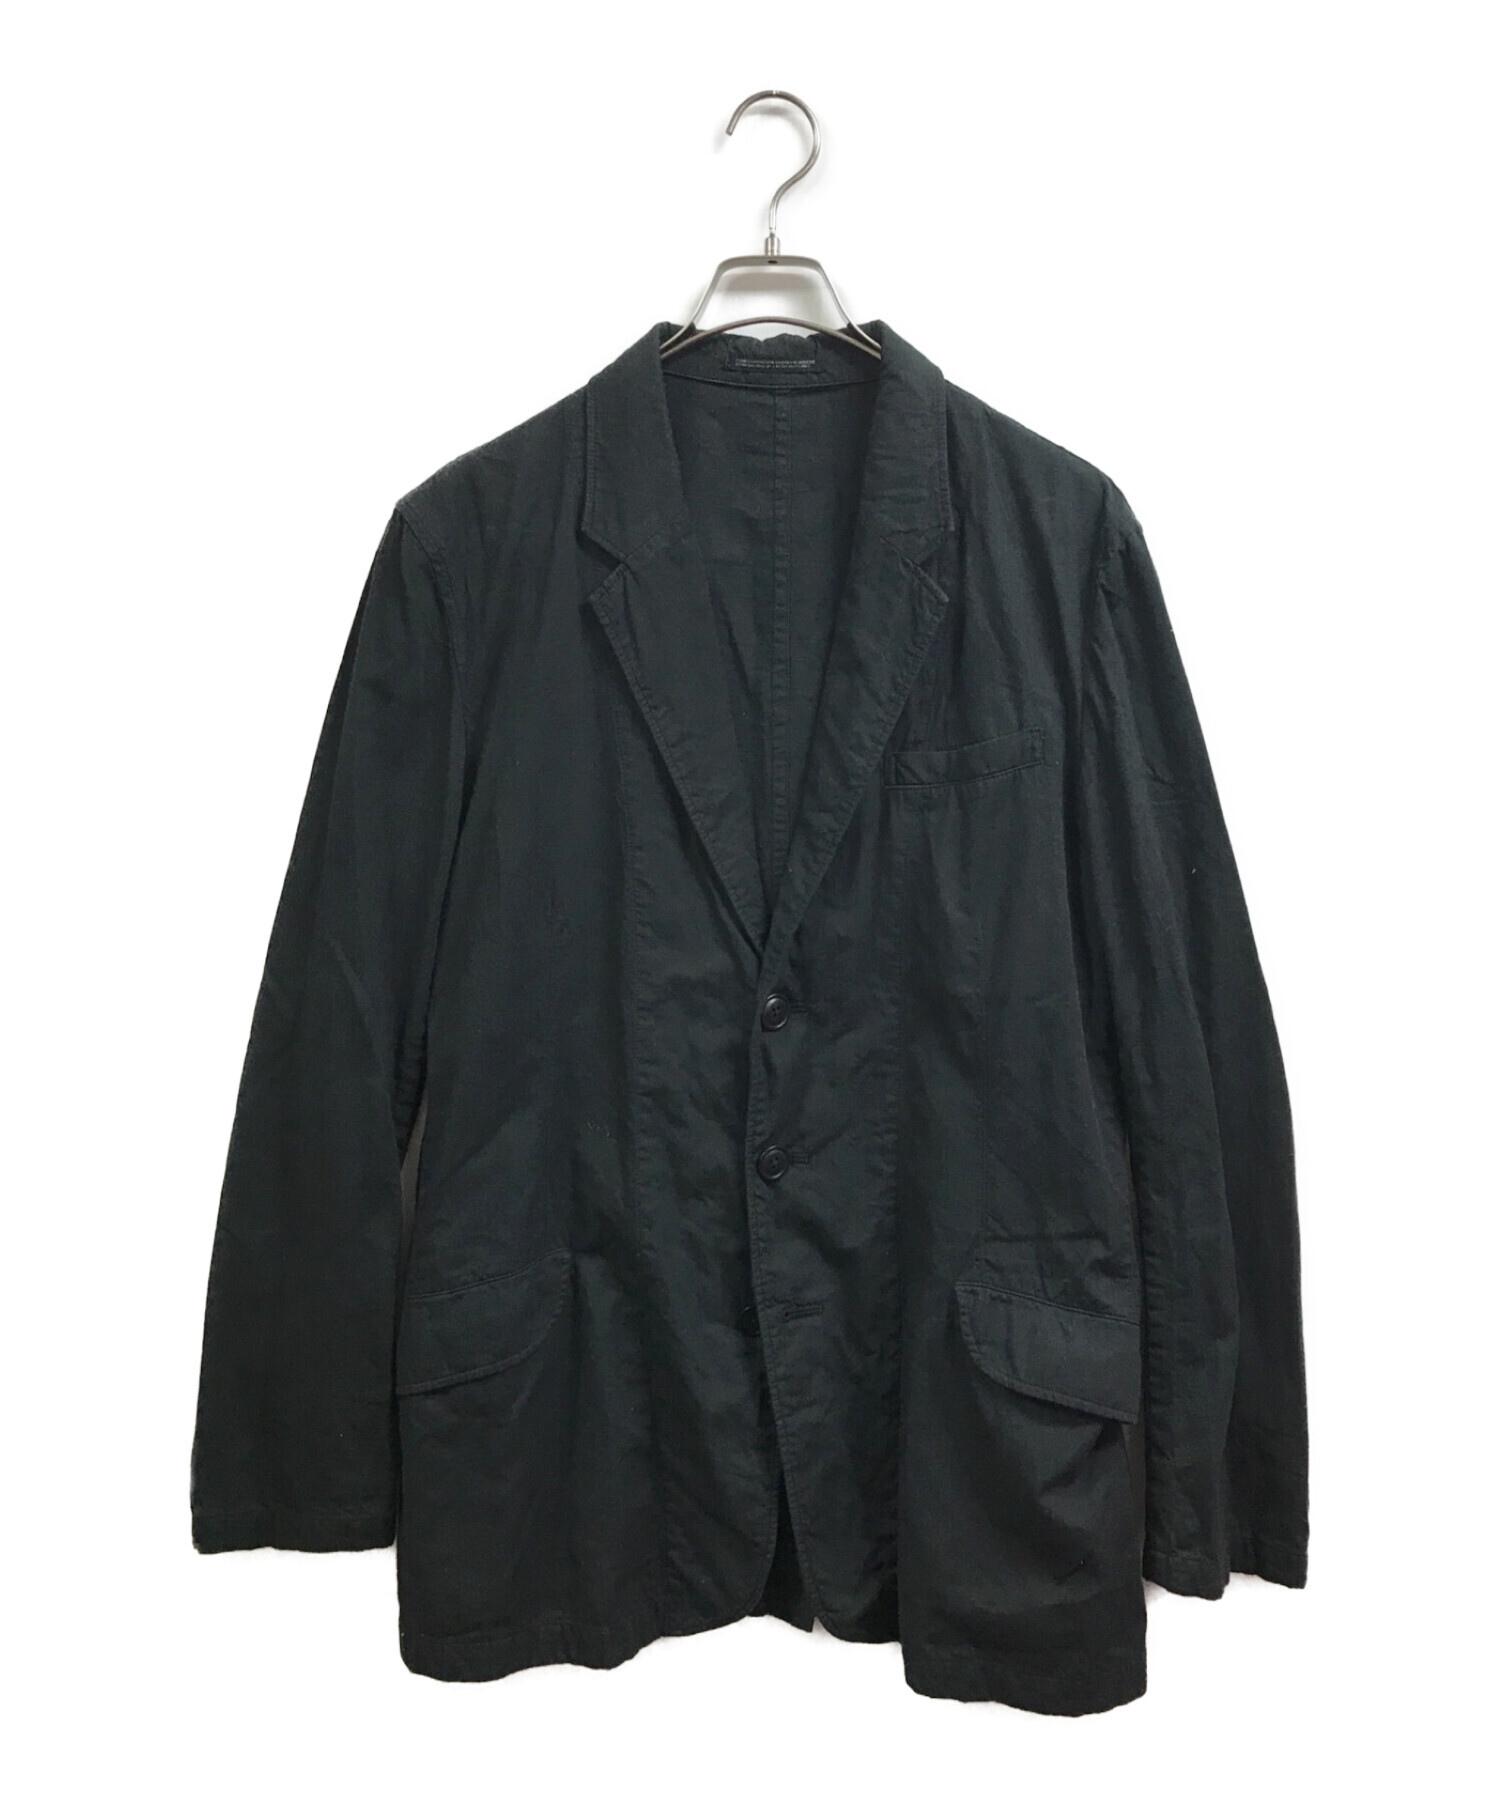 Yohji Yamamoto pour homme (ヨウジヤマモト プールオム) 製品染め3Bジャケット ブラック サイズ:2